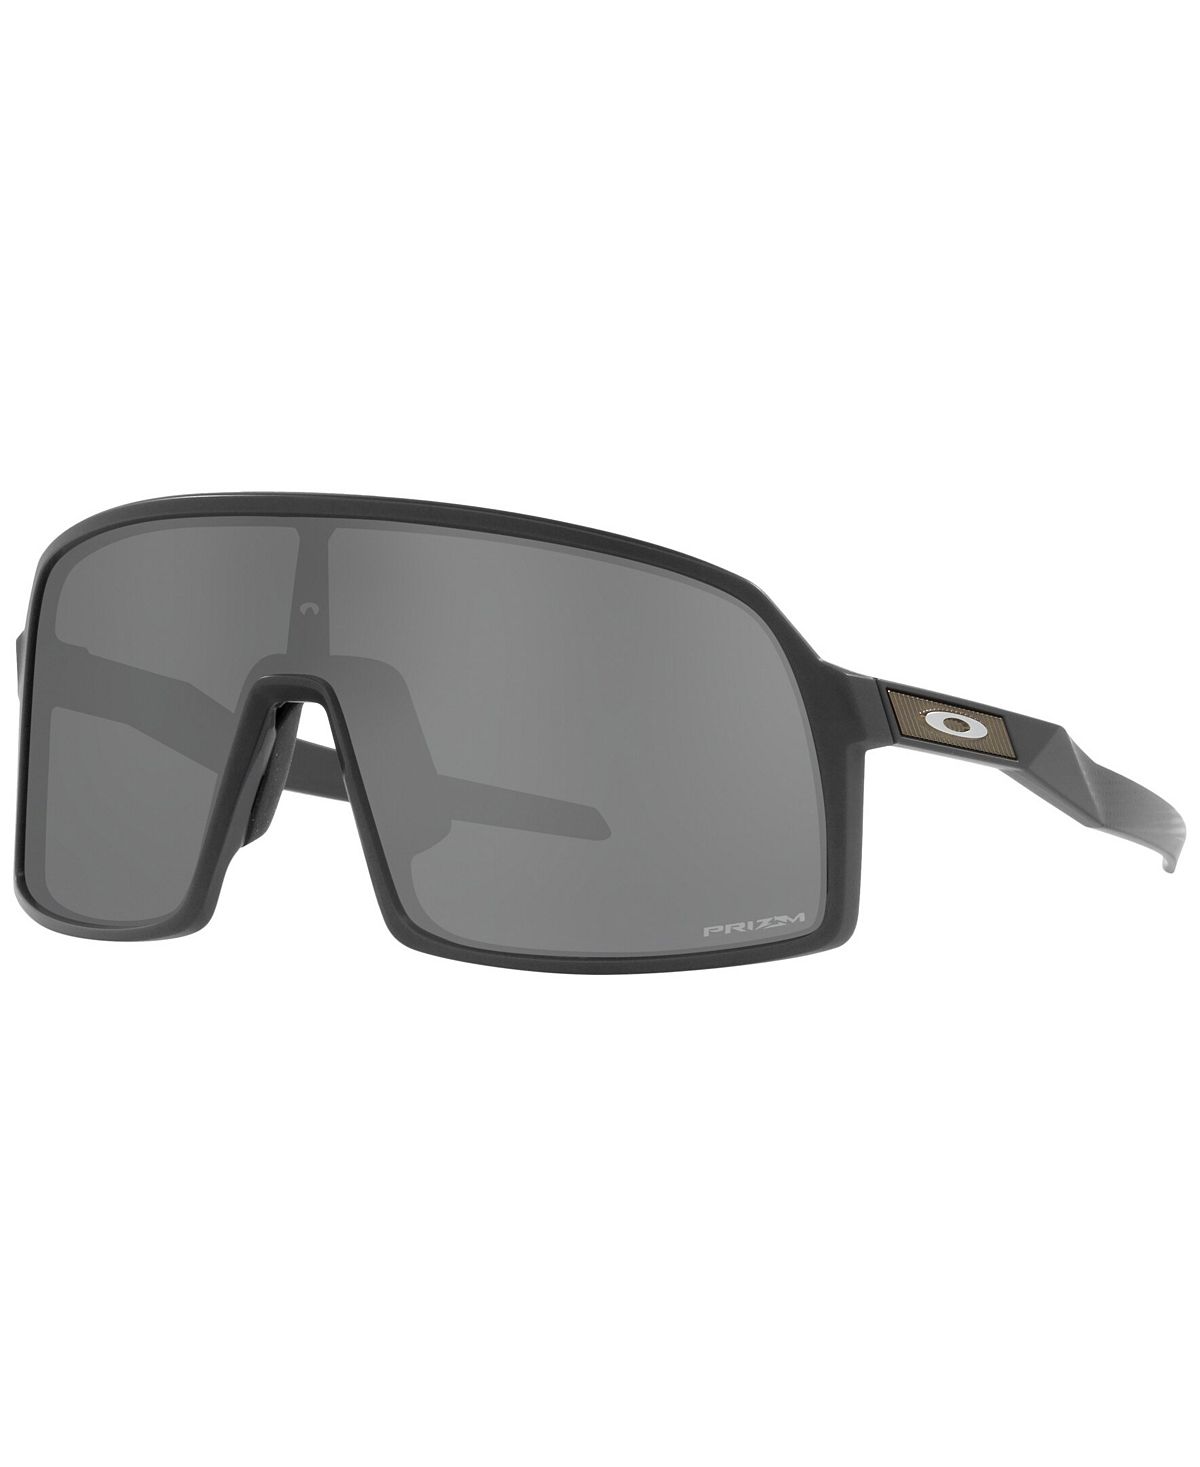 tufo трубка tufo c hi composite carbon 23мм Мужские солнцезащитные очки, OO9462 Sutro S, коллекция высокого разрешения Oakley